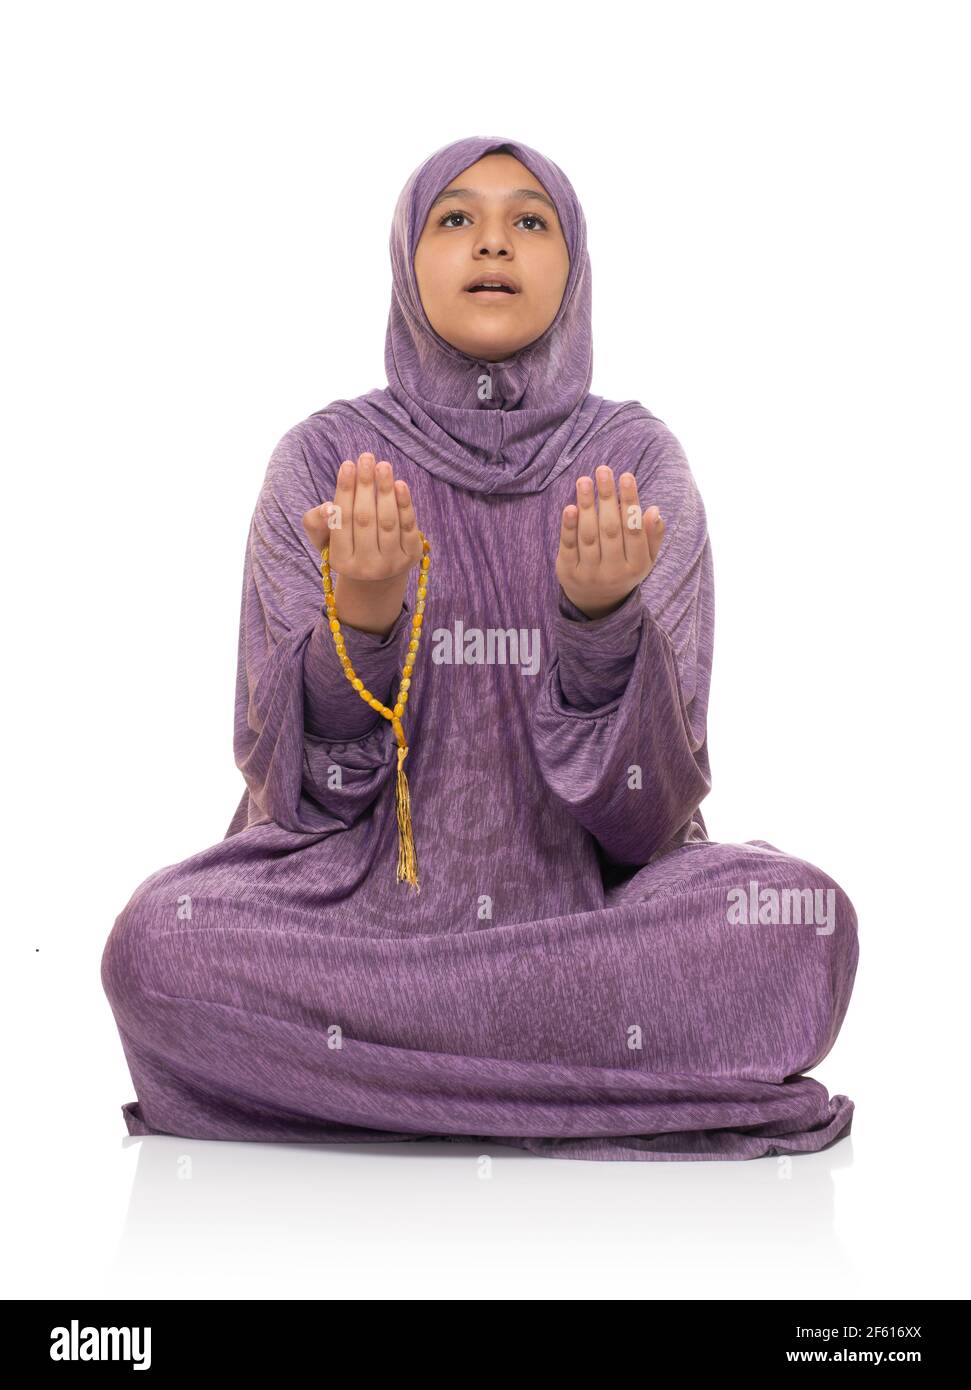 Mujer Musulmana buscando orar por Alá, Chica con Traje de Oración y Rosario, concepto Ramadan Kareem Foto de stock